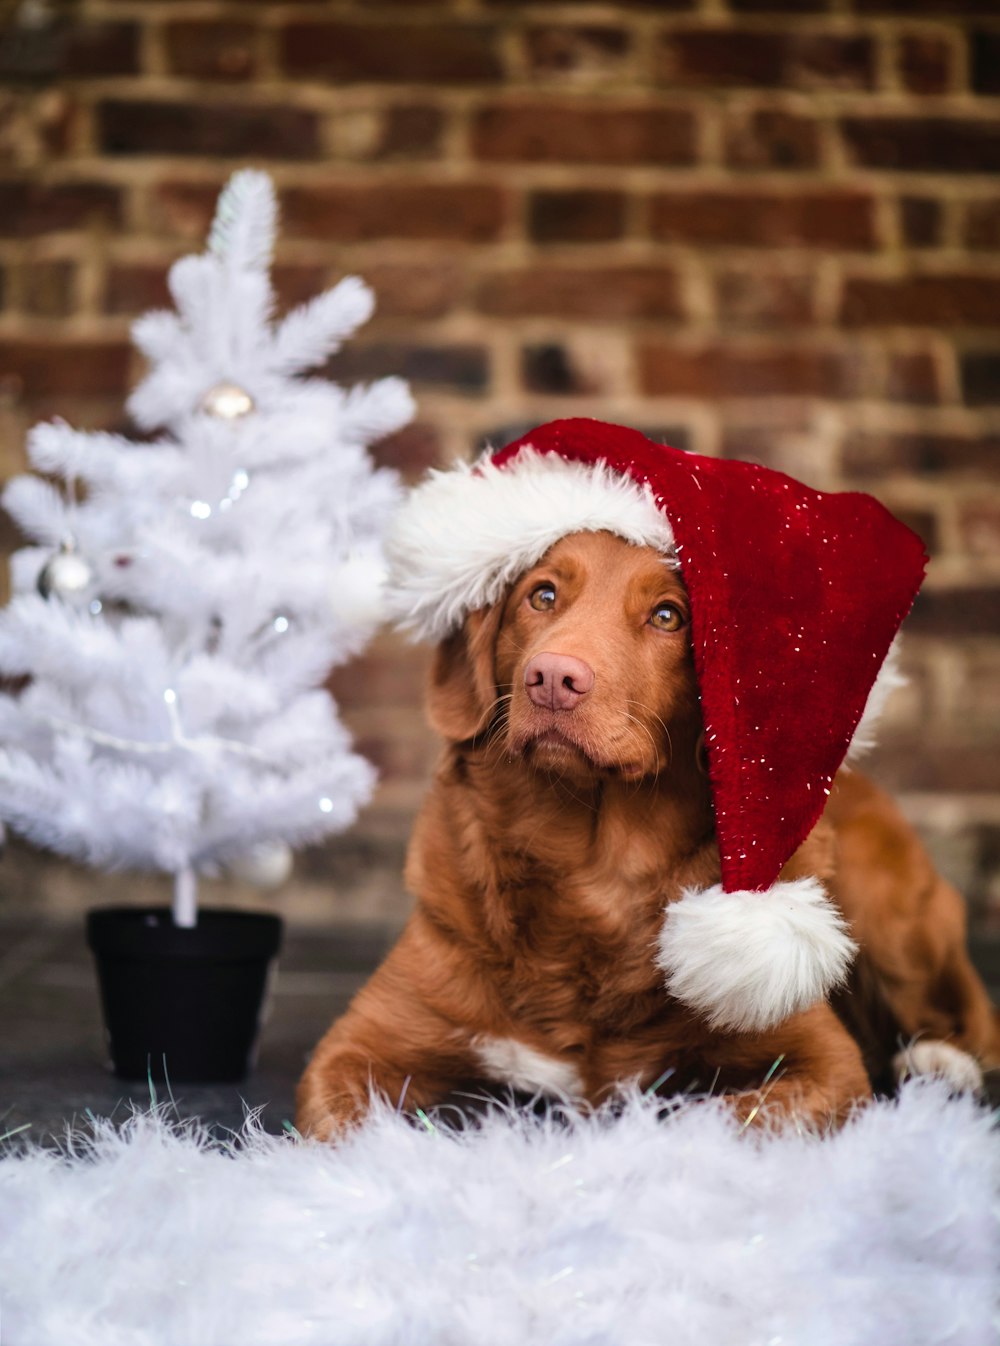 Brauner kurzhaariger Hund mit Weihnachtsmannmütze